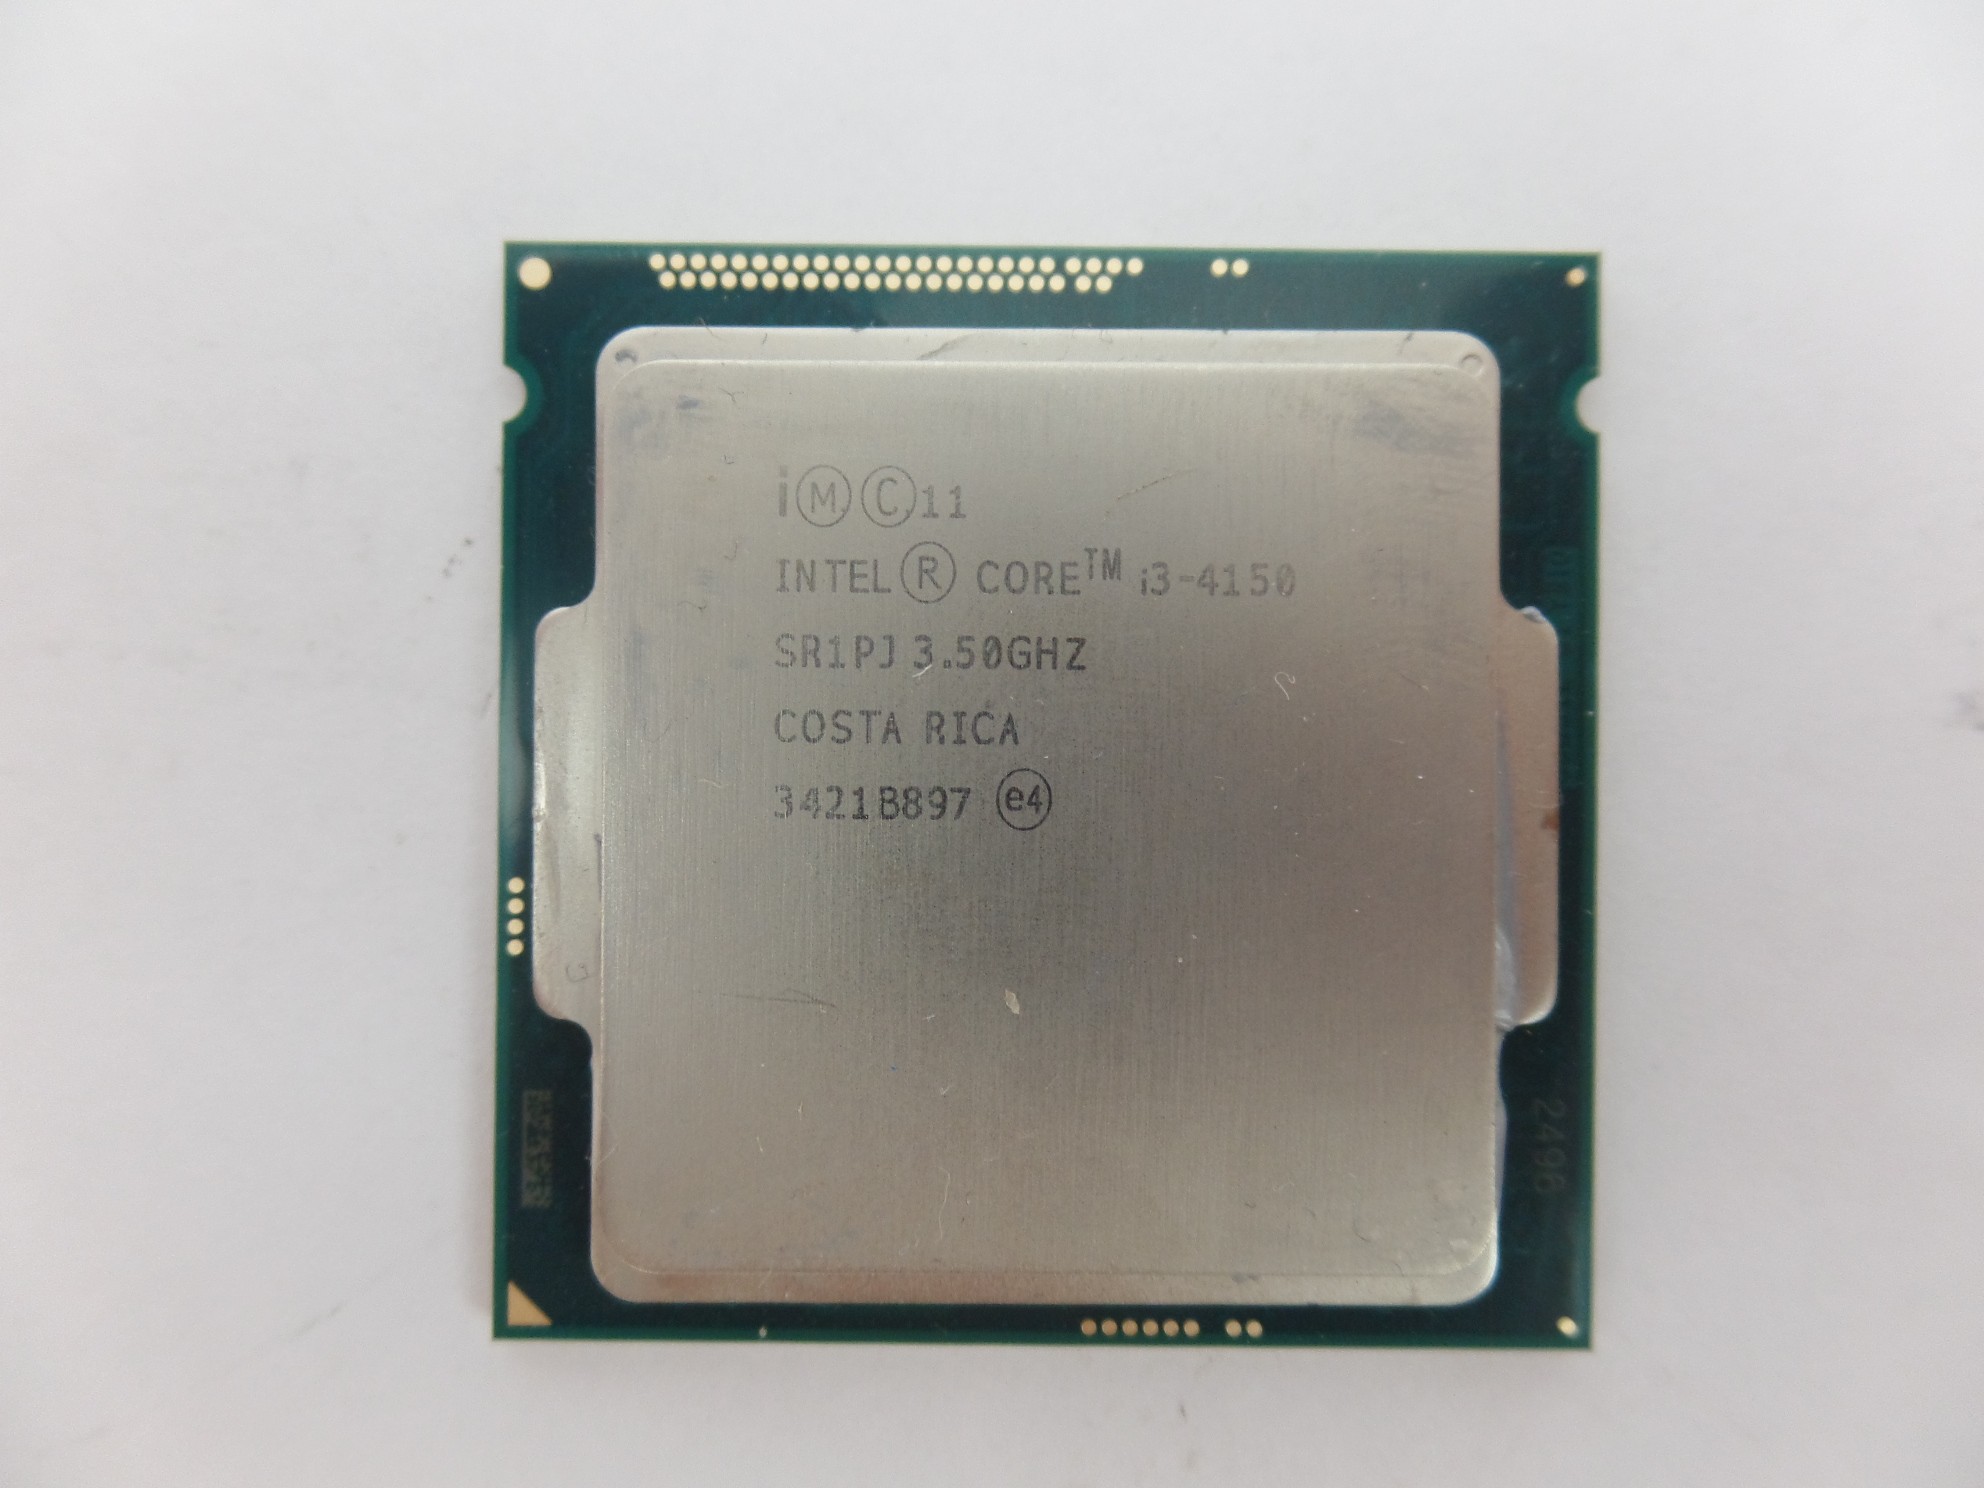 Intel Core i3-4150 SR1PJ 3.5GHz Dual Core Desktop CPU Socket Processor